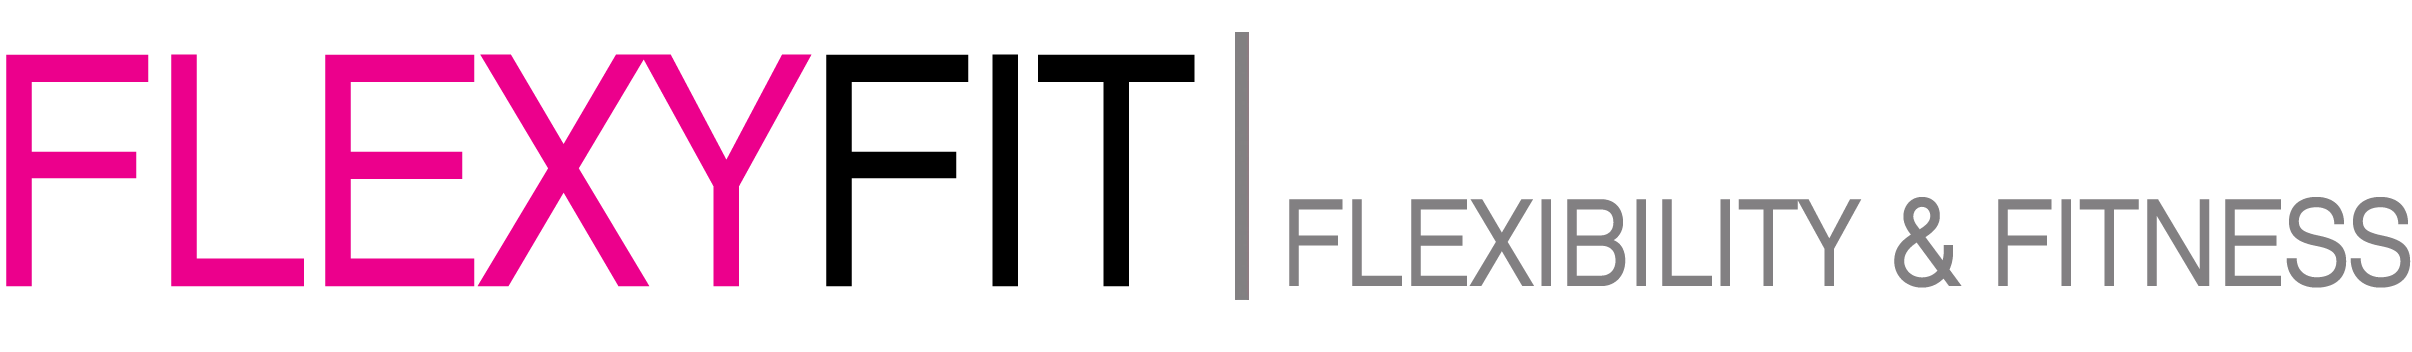 FlexyFit